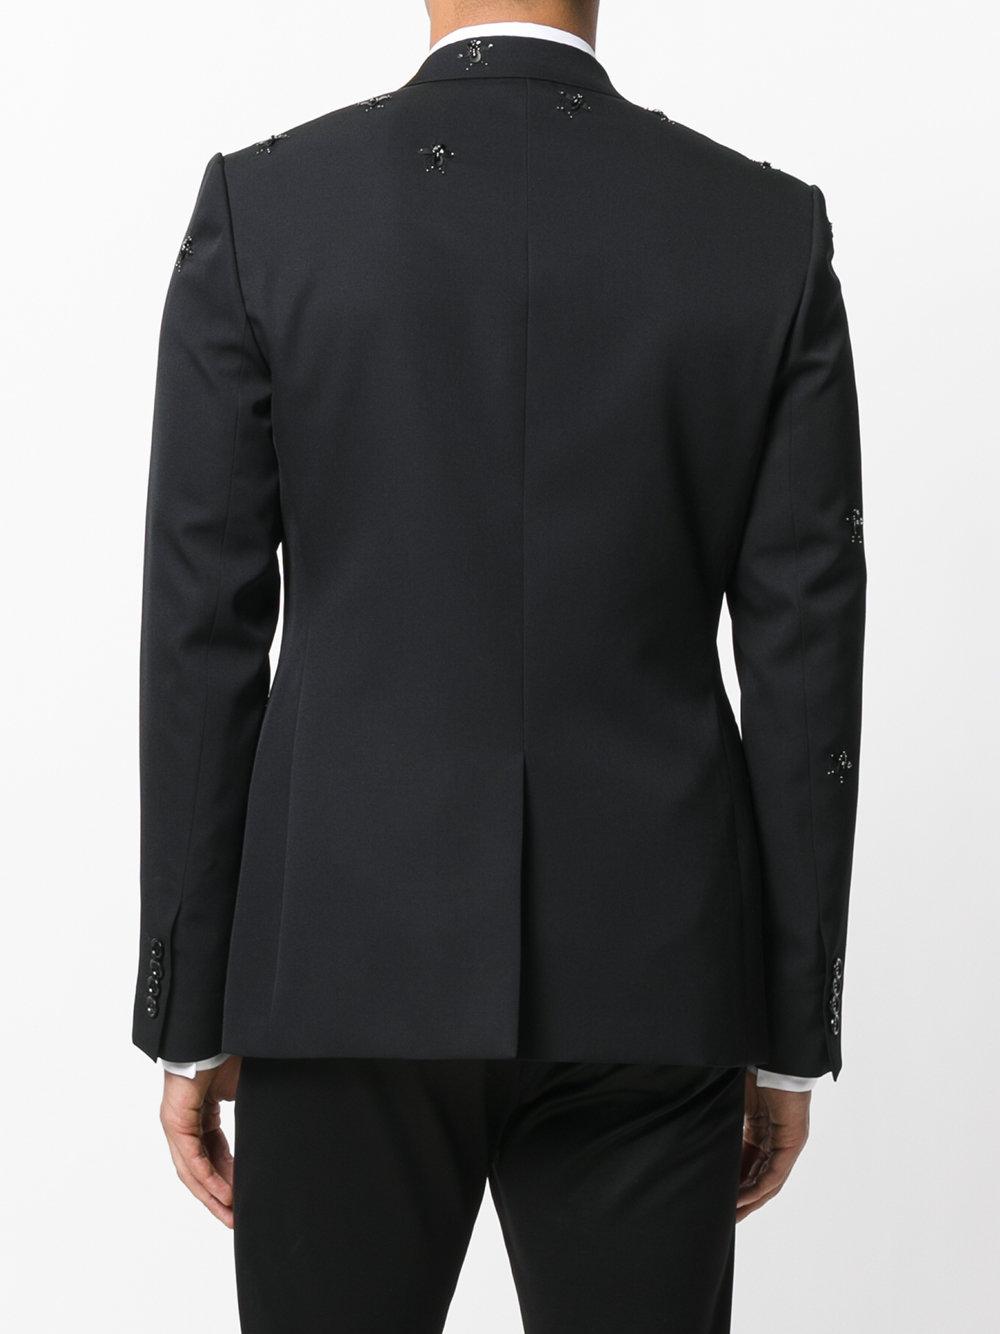 Lyst - Dior Homme Suit Jacket in Black for Men